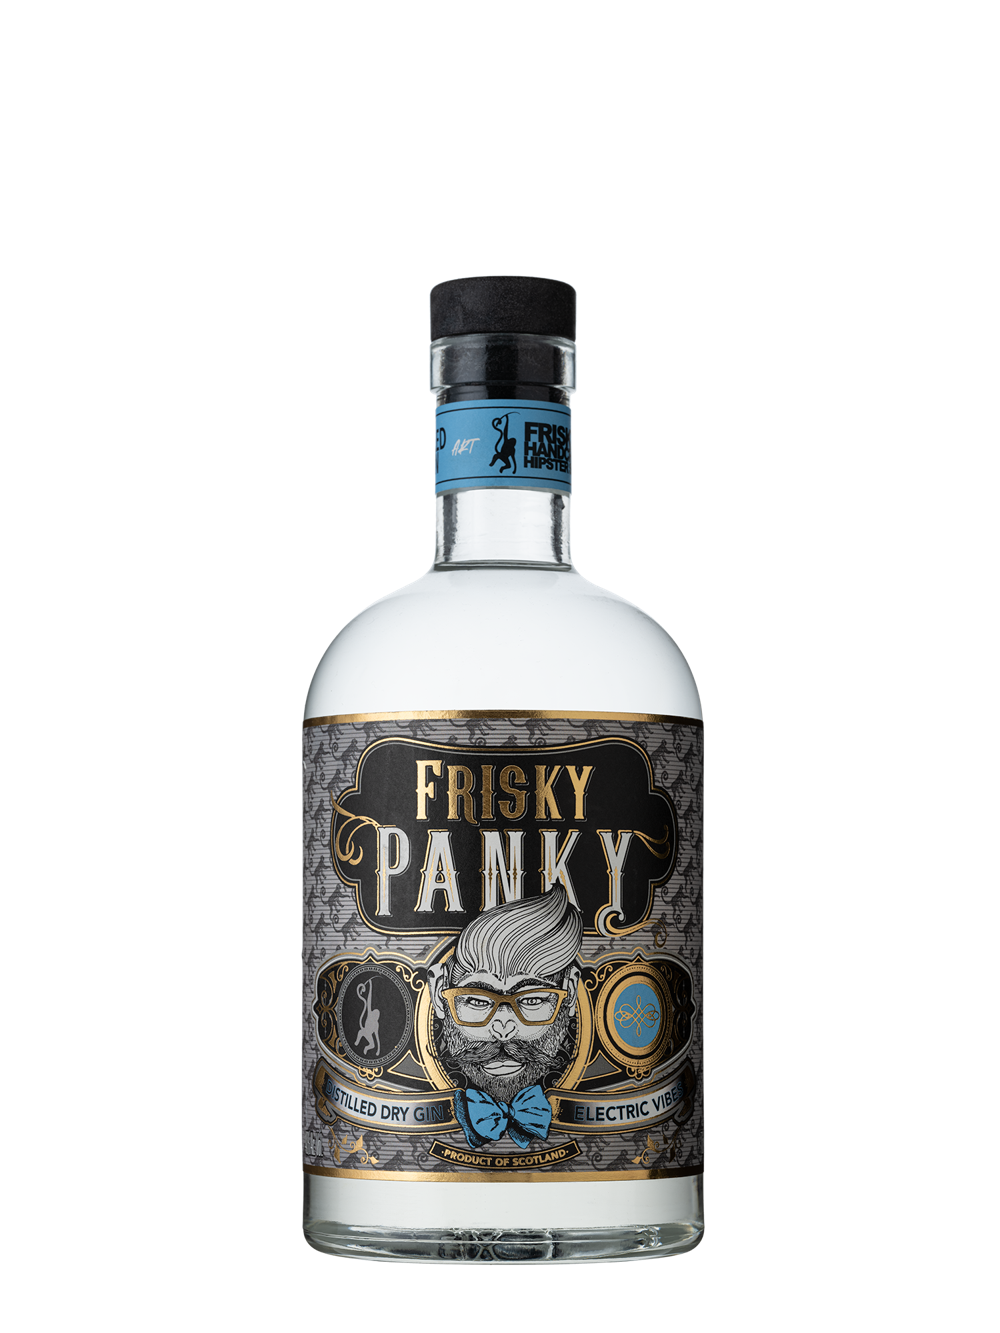 FRISKY PANKY DISTILLED DRY GIN 40.0% 0.7L, Spirits